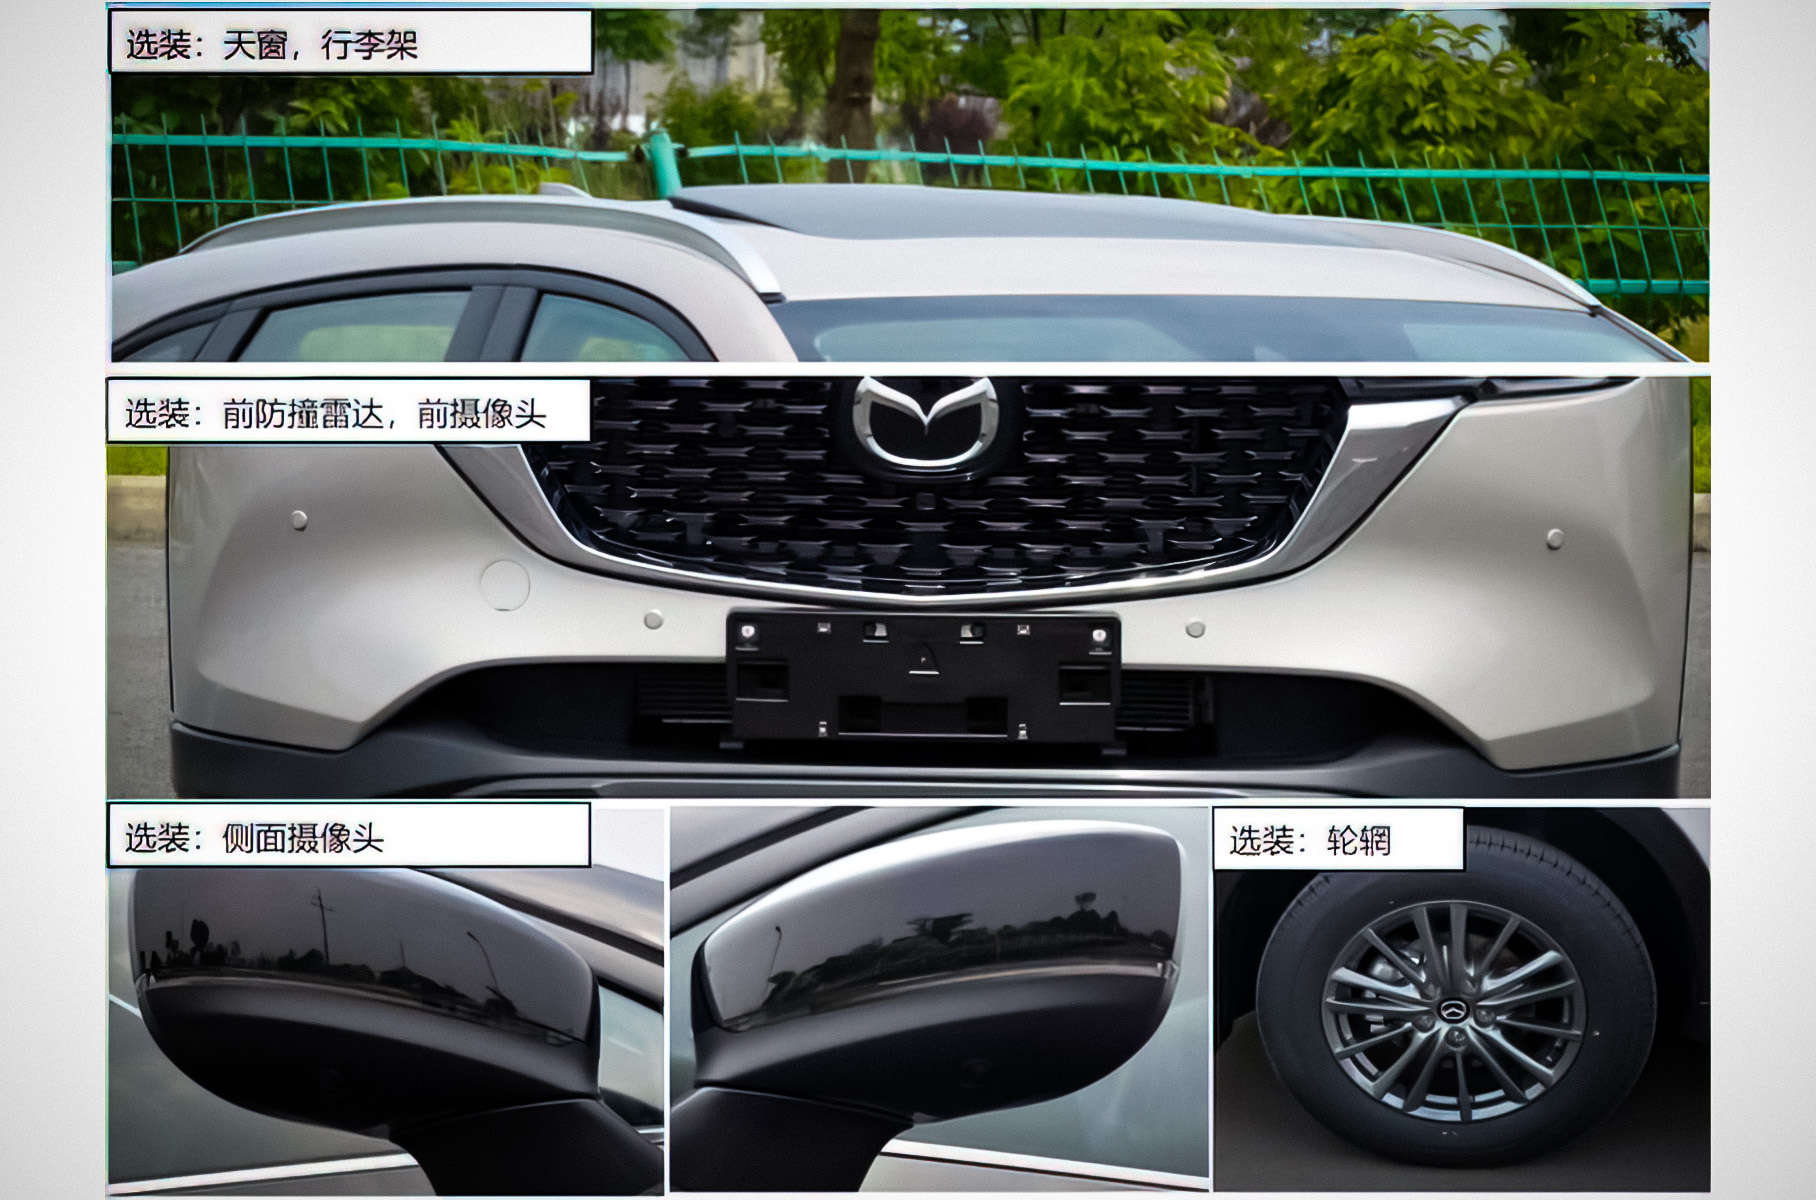 Дизайн обновленной Mazda CX-5 рассекретили раньше срока